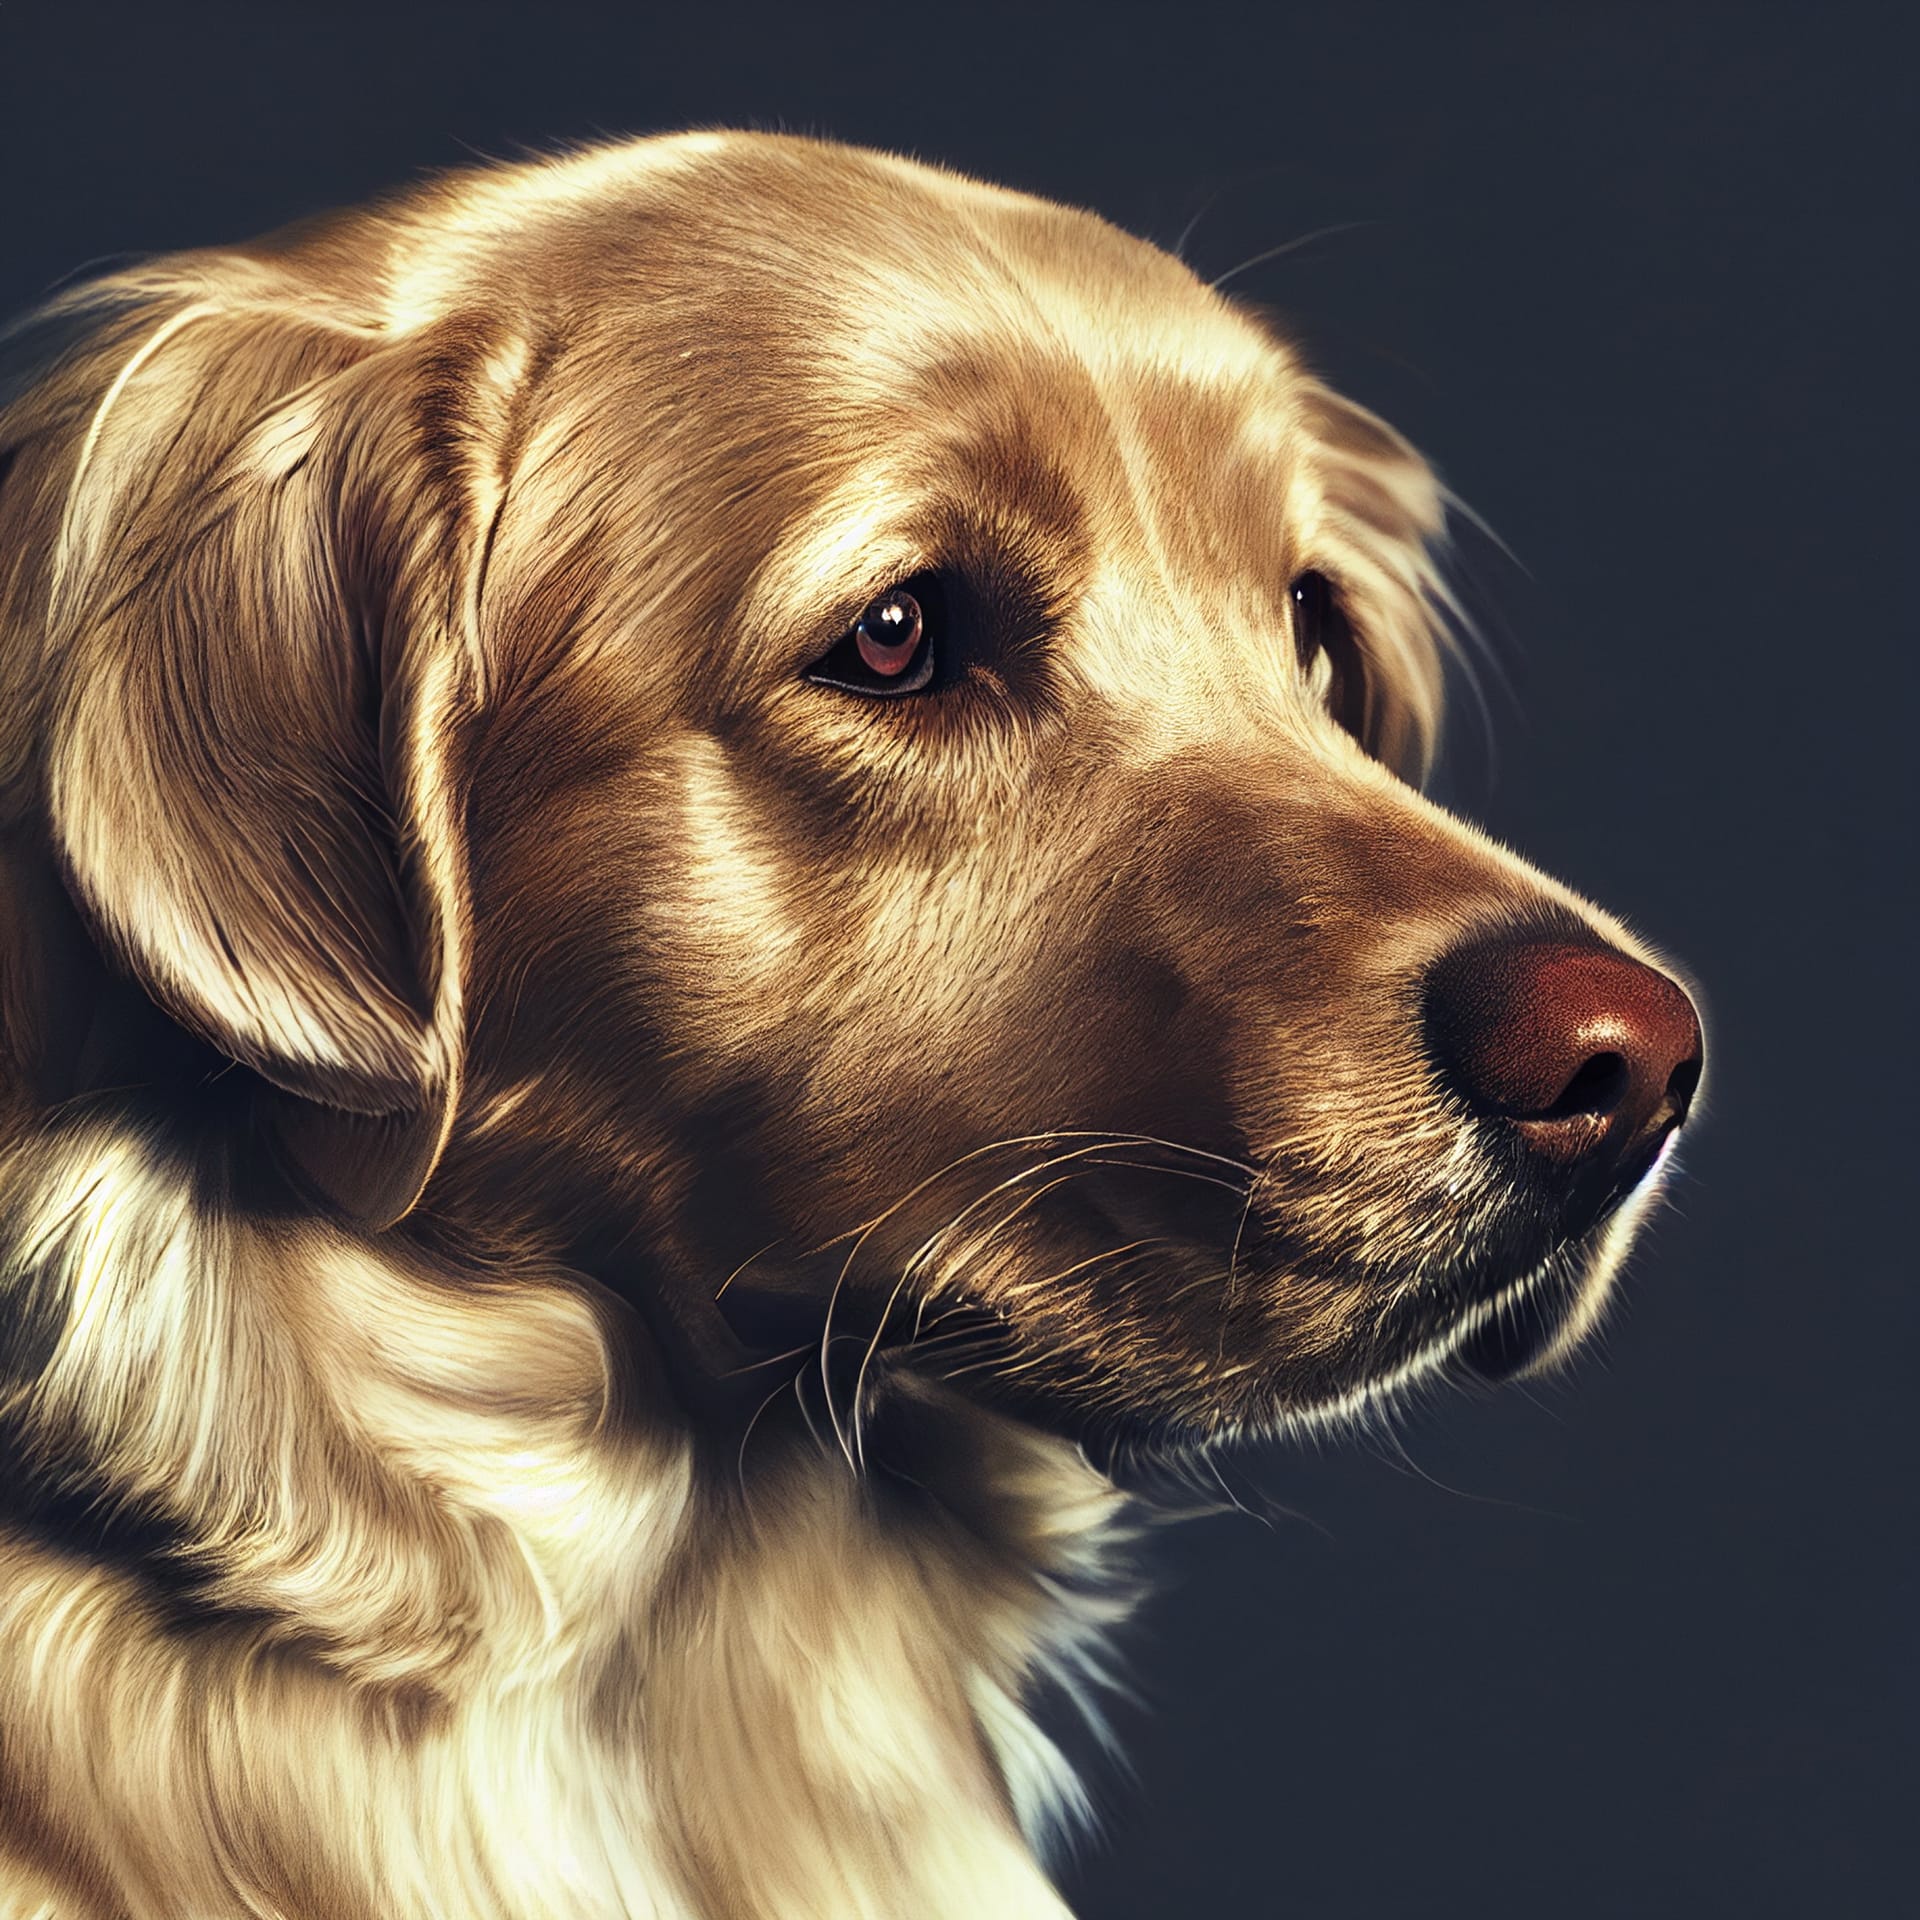 Dog images portrait golden retreiver